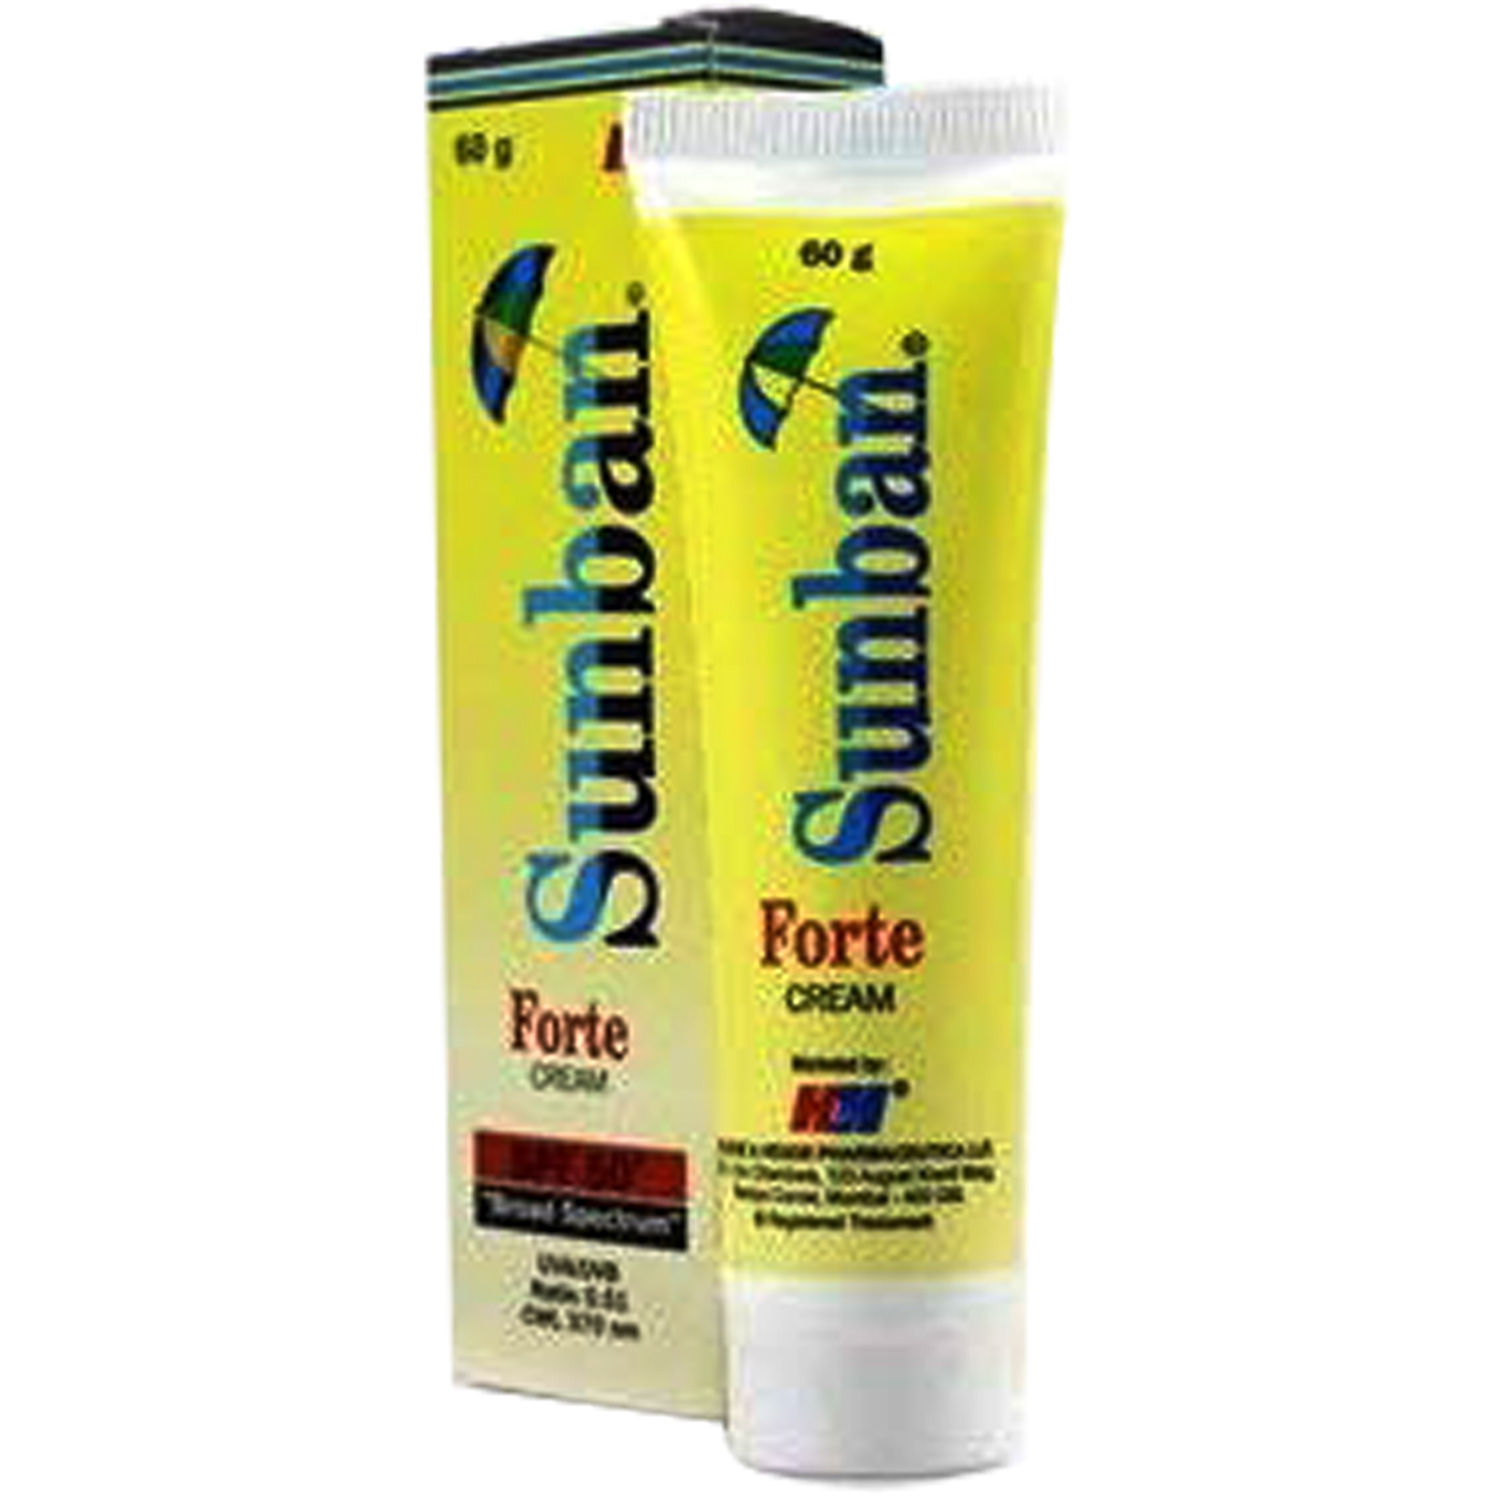 Buy Sunban Forte Cream, 60 gm Online